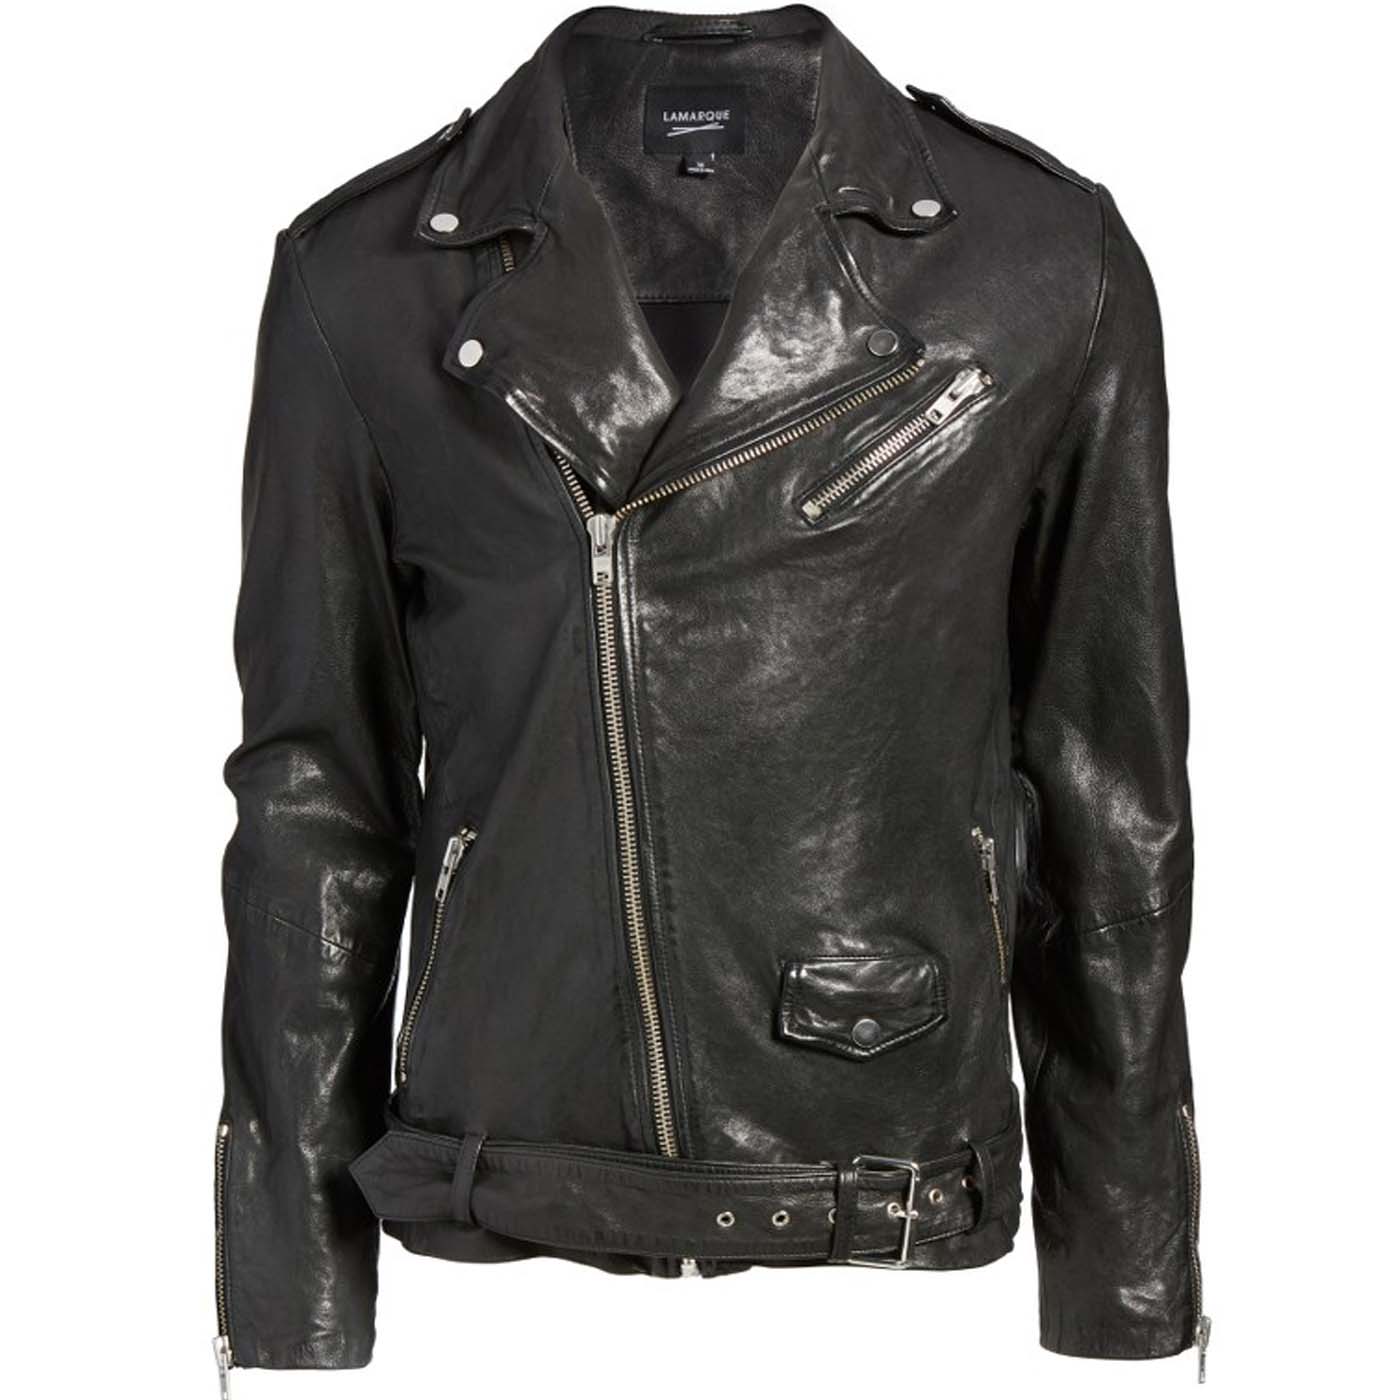 Leather Biker Jacket For Mens.